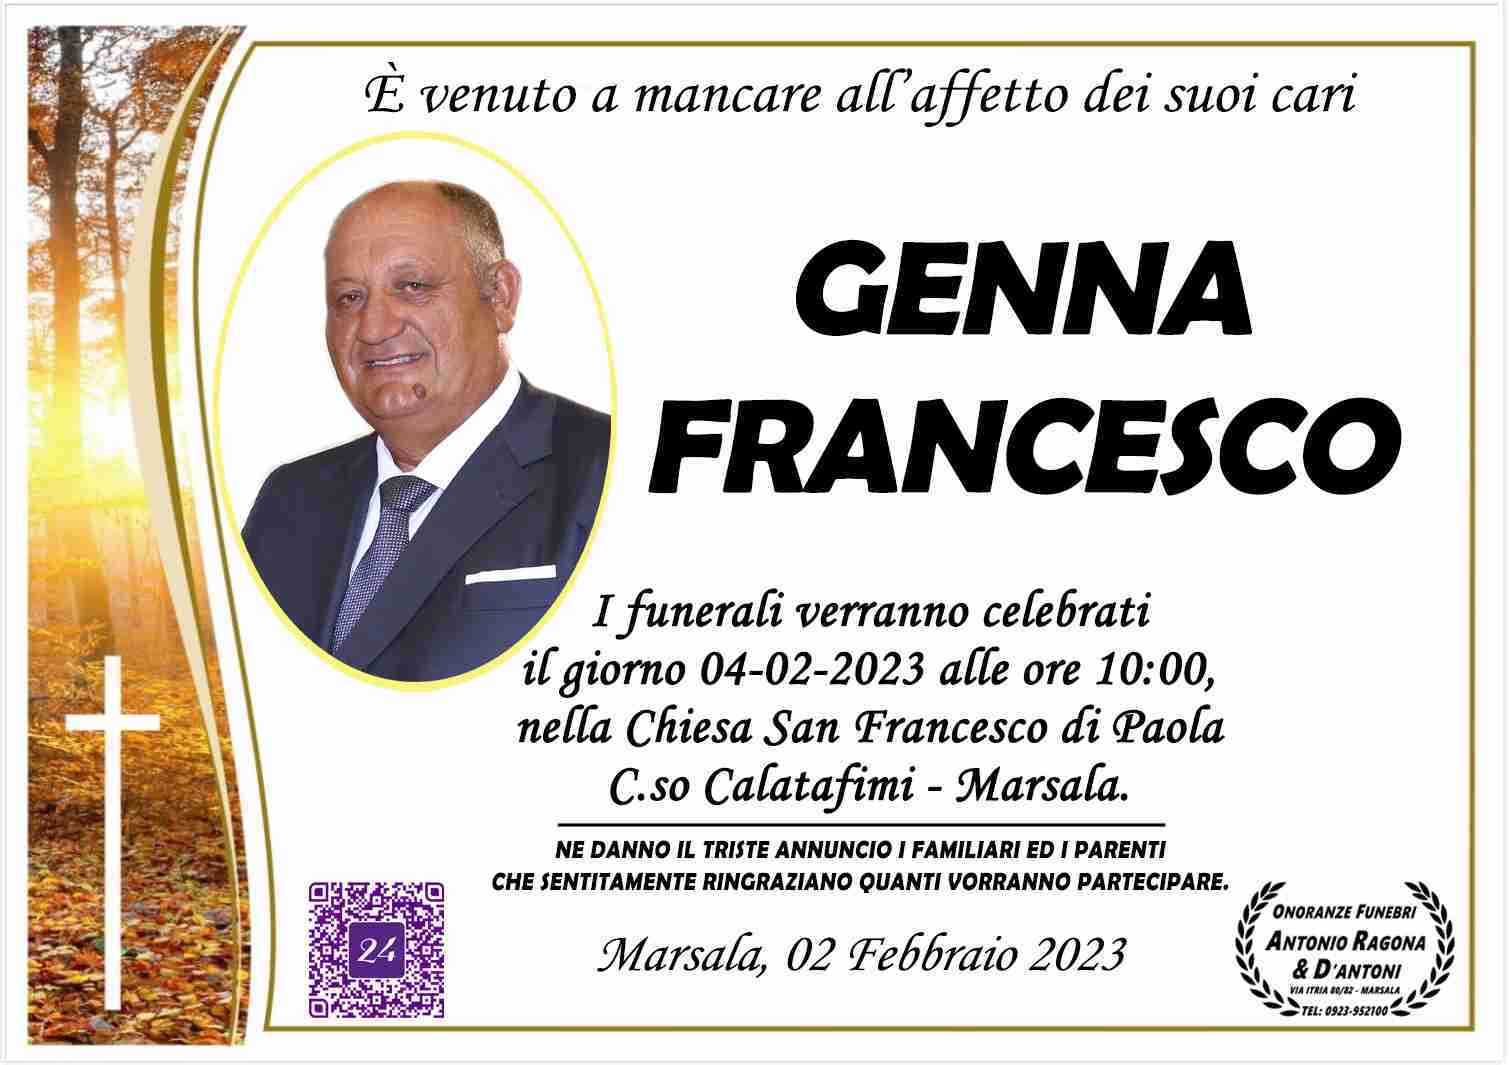 Francesco Genna